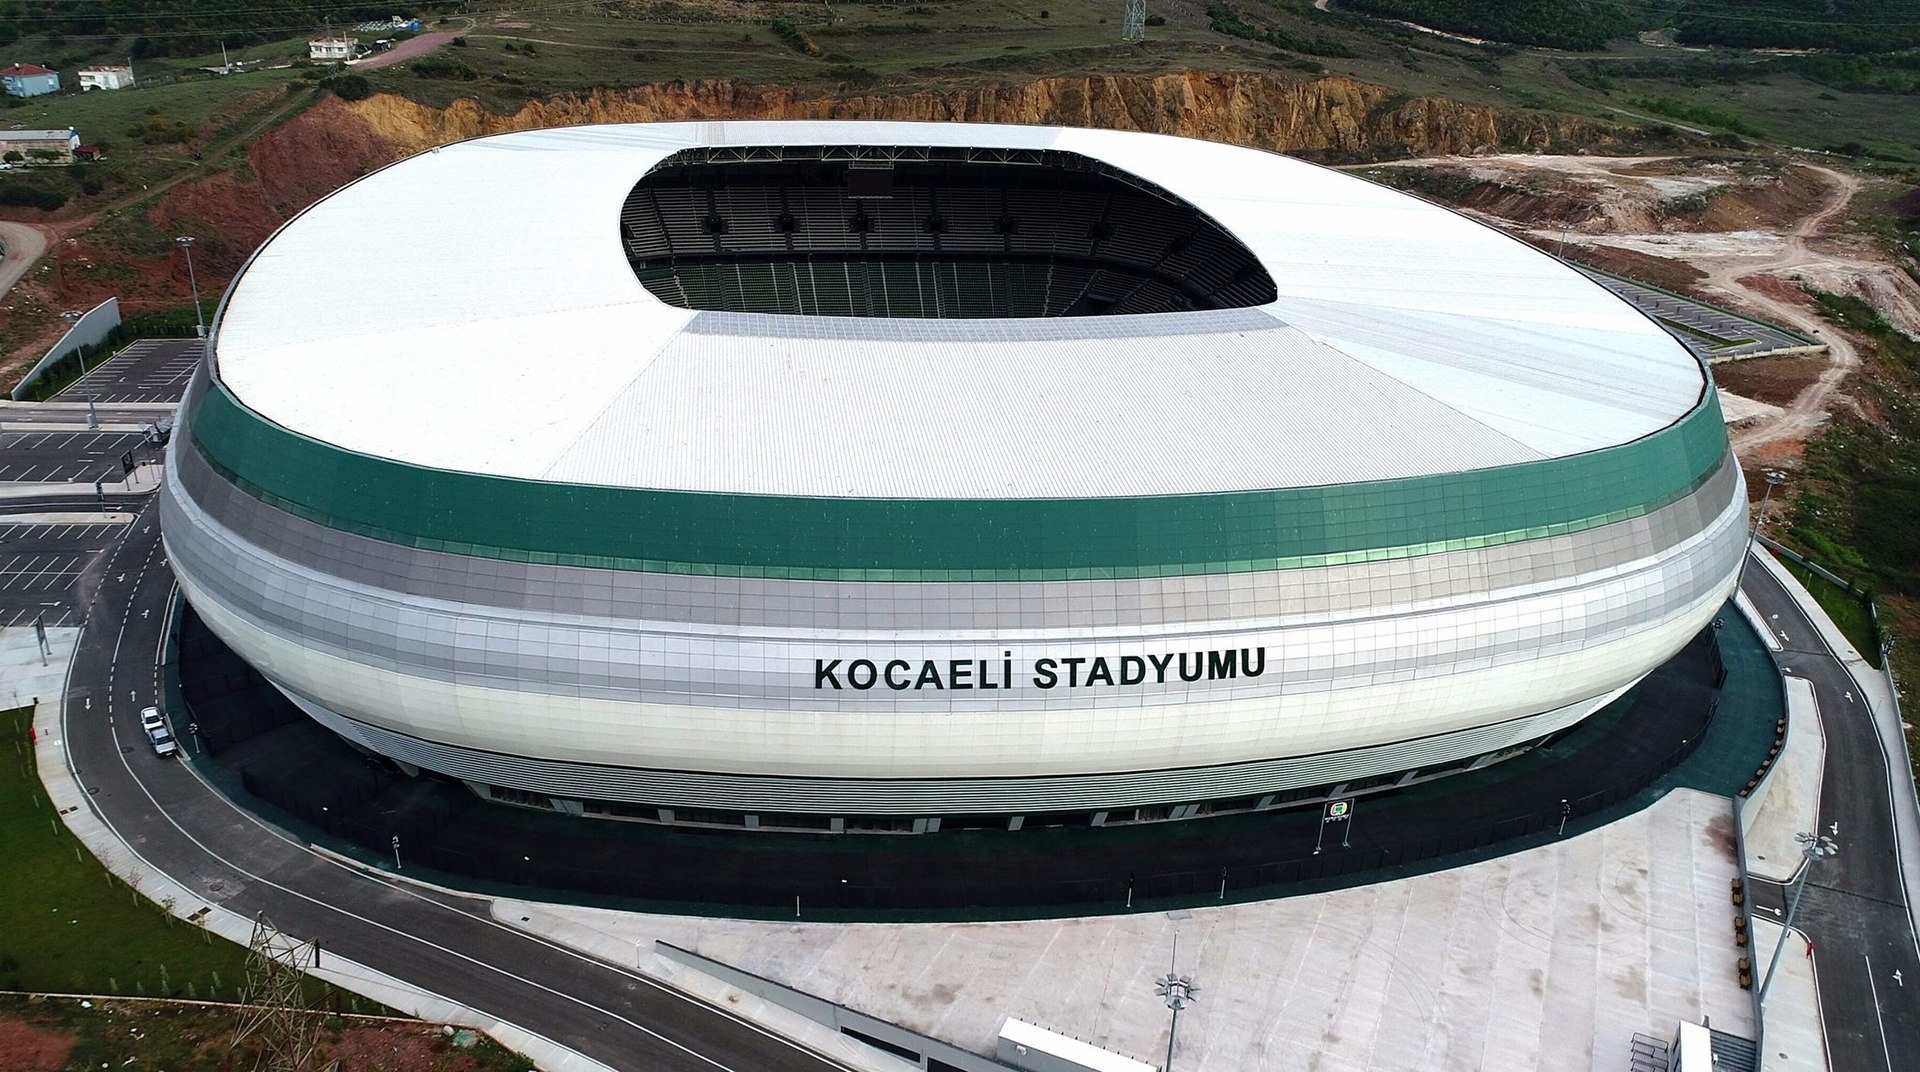 ملعب كوجالي "Kocaeli Stadyumu"